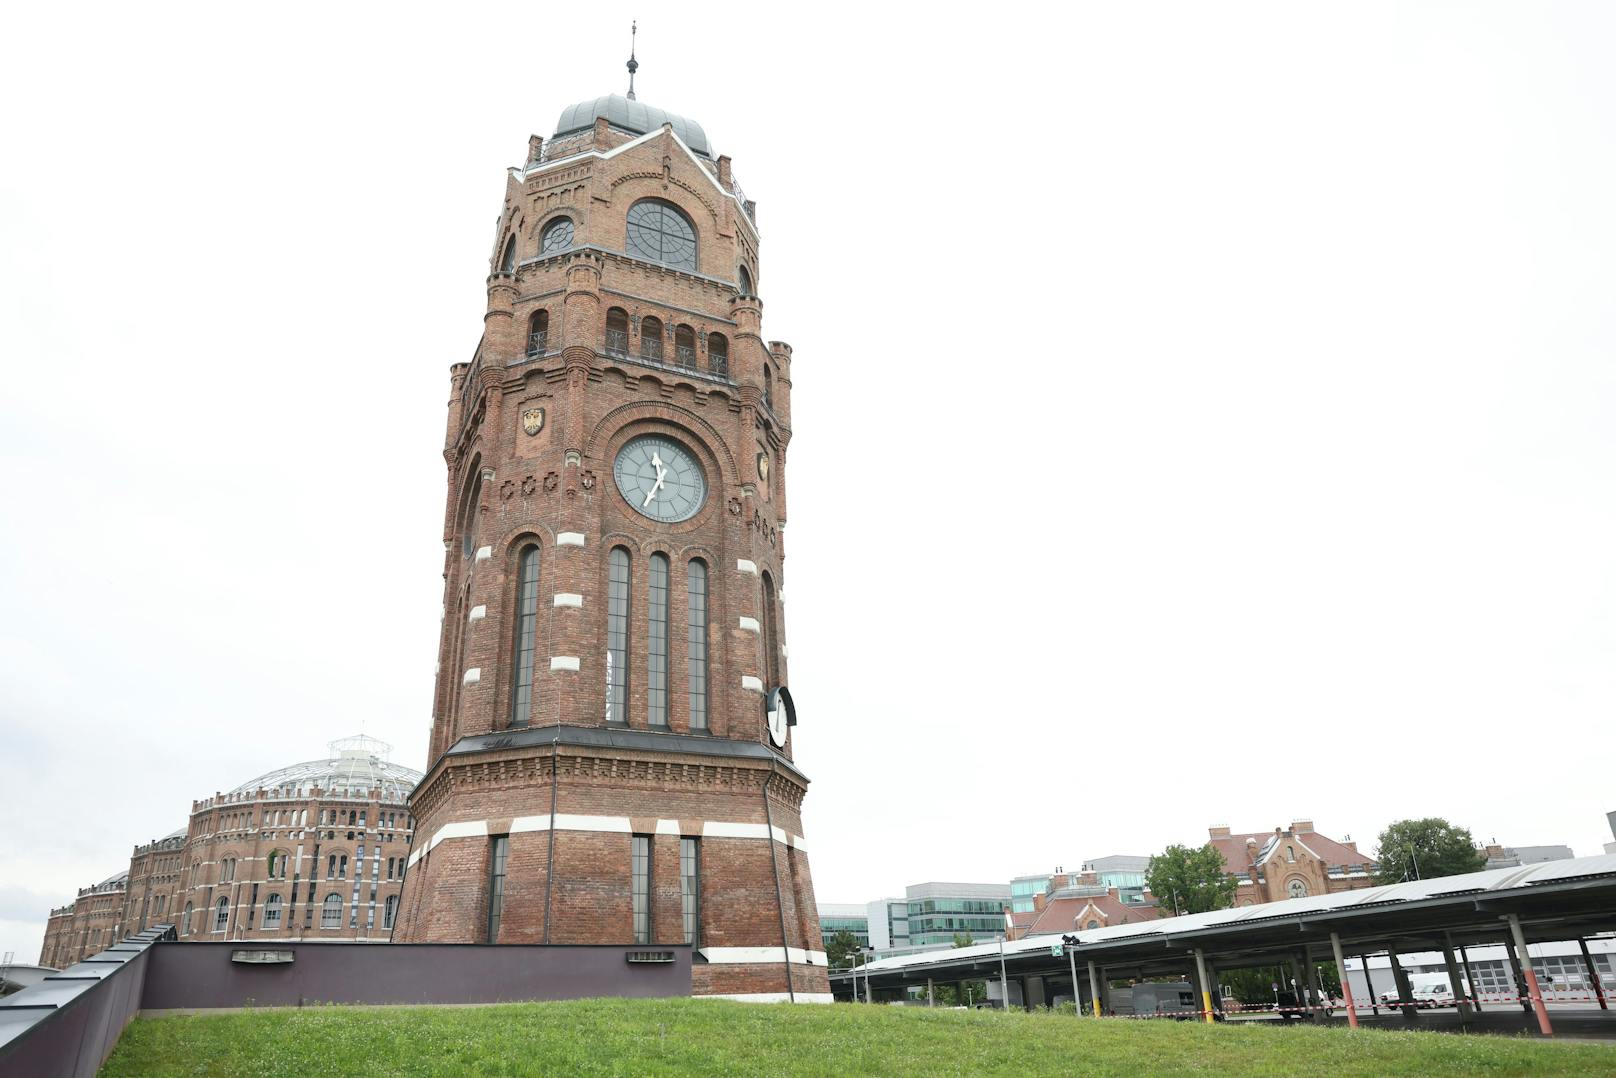 Das Restaurant und Kommunikationszentrum der Wiener Netze ist zwischen&nbsp;zwei besonderen Baudenkmälern situiert, dem Gasometer (im Hintergrund auf der linken Seite zu sehen) und dem Wasserturm.